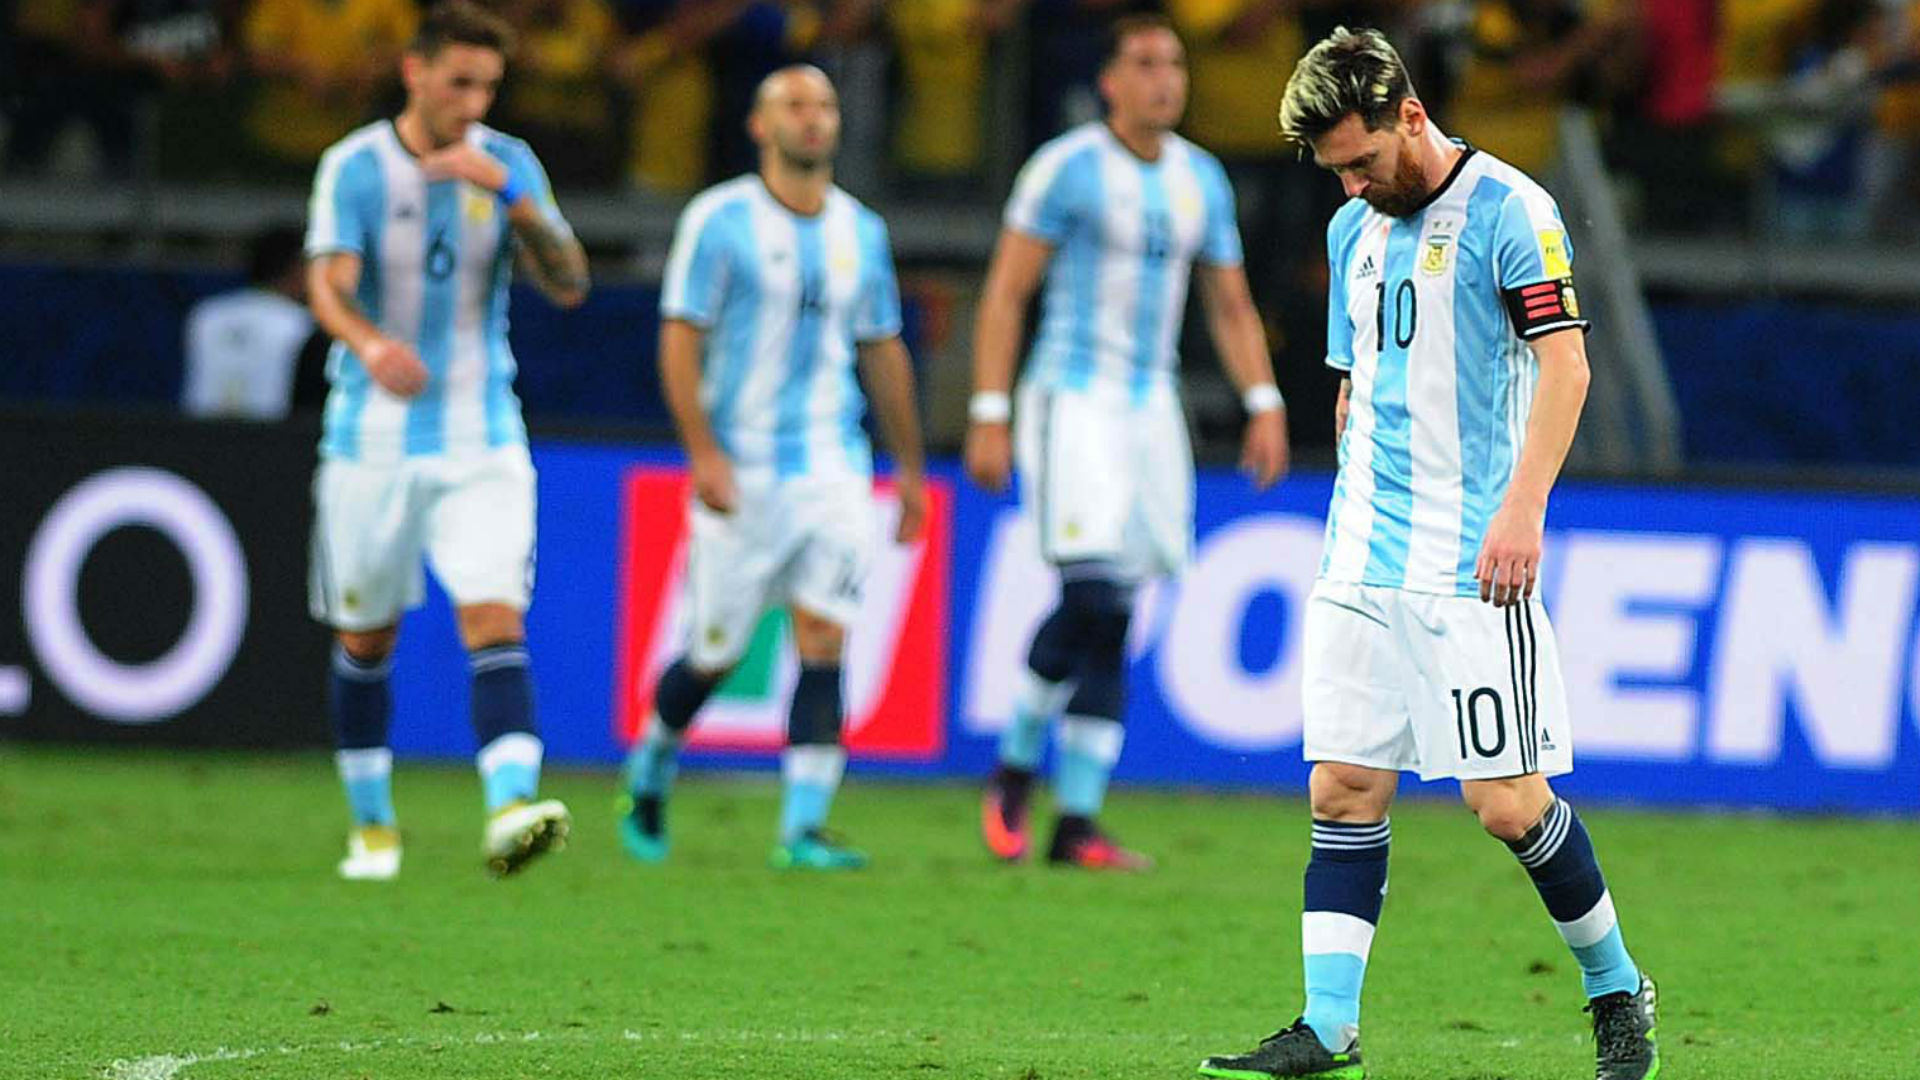 المنتخب الأرجنتينى فى تصفيات كأس العالم 2018 مسيرة متخبطة